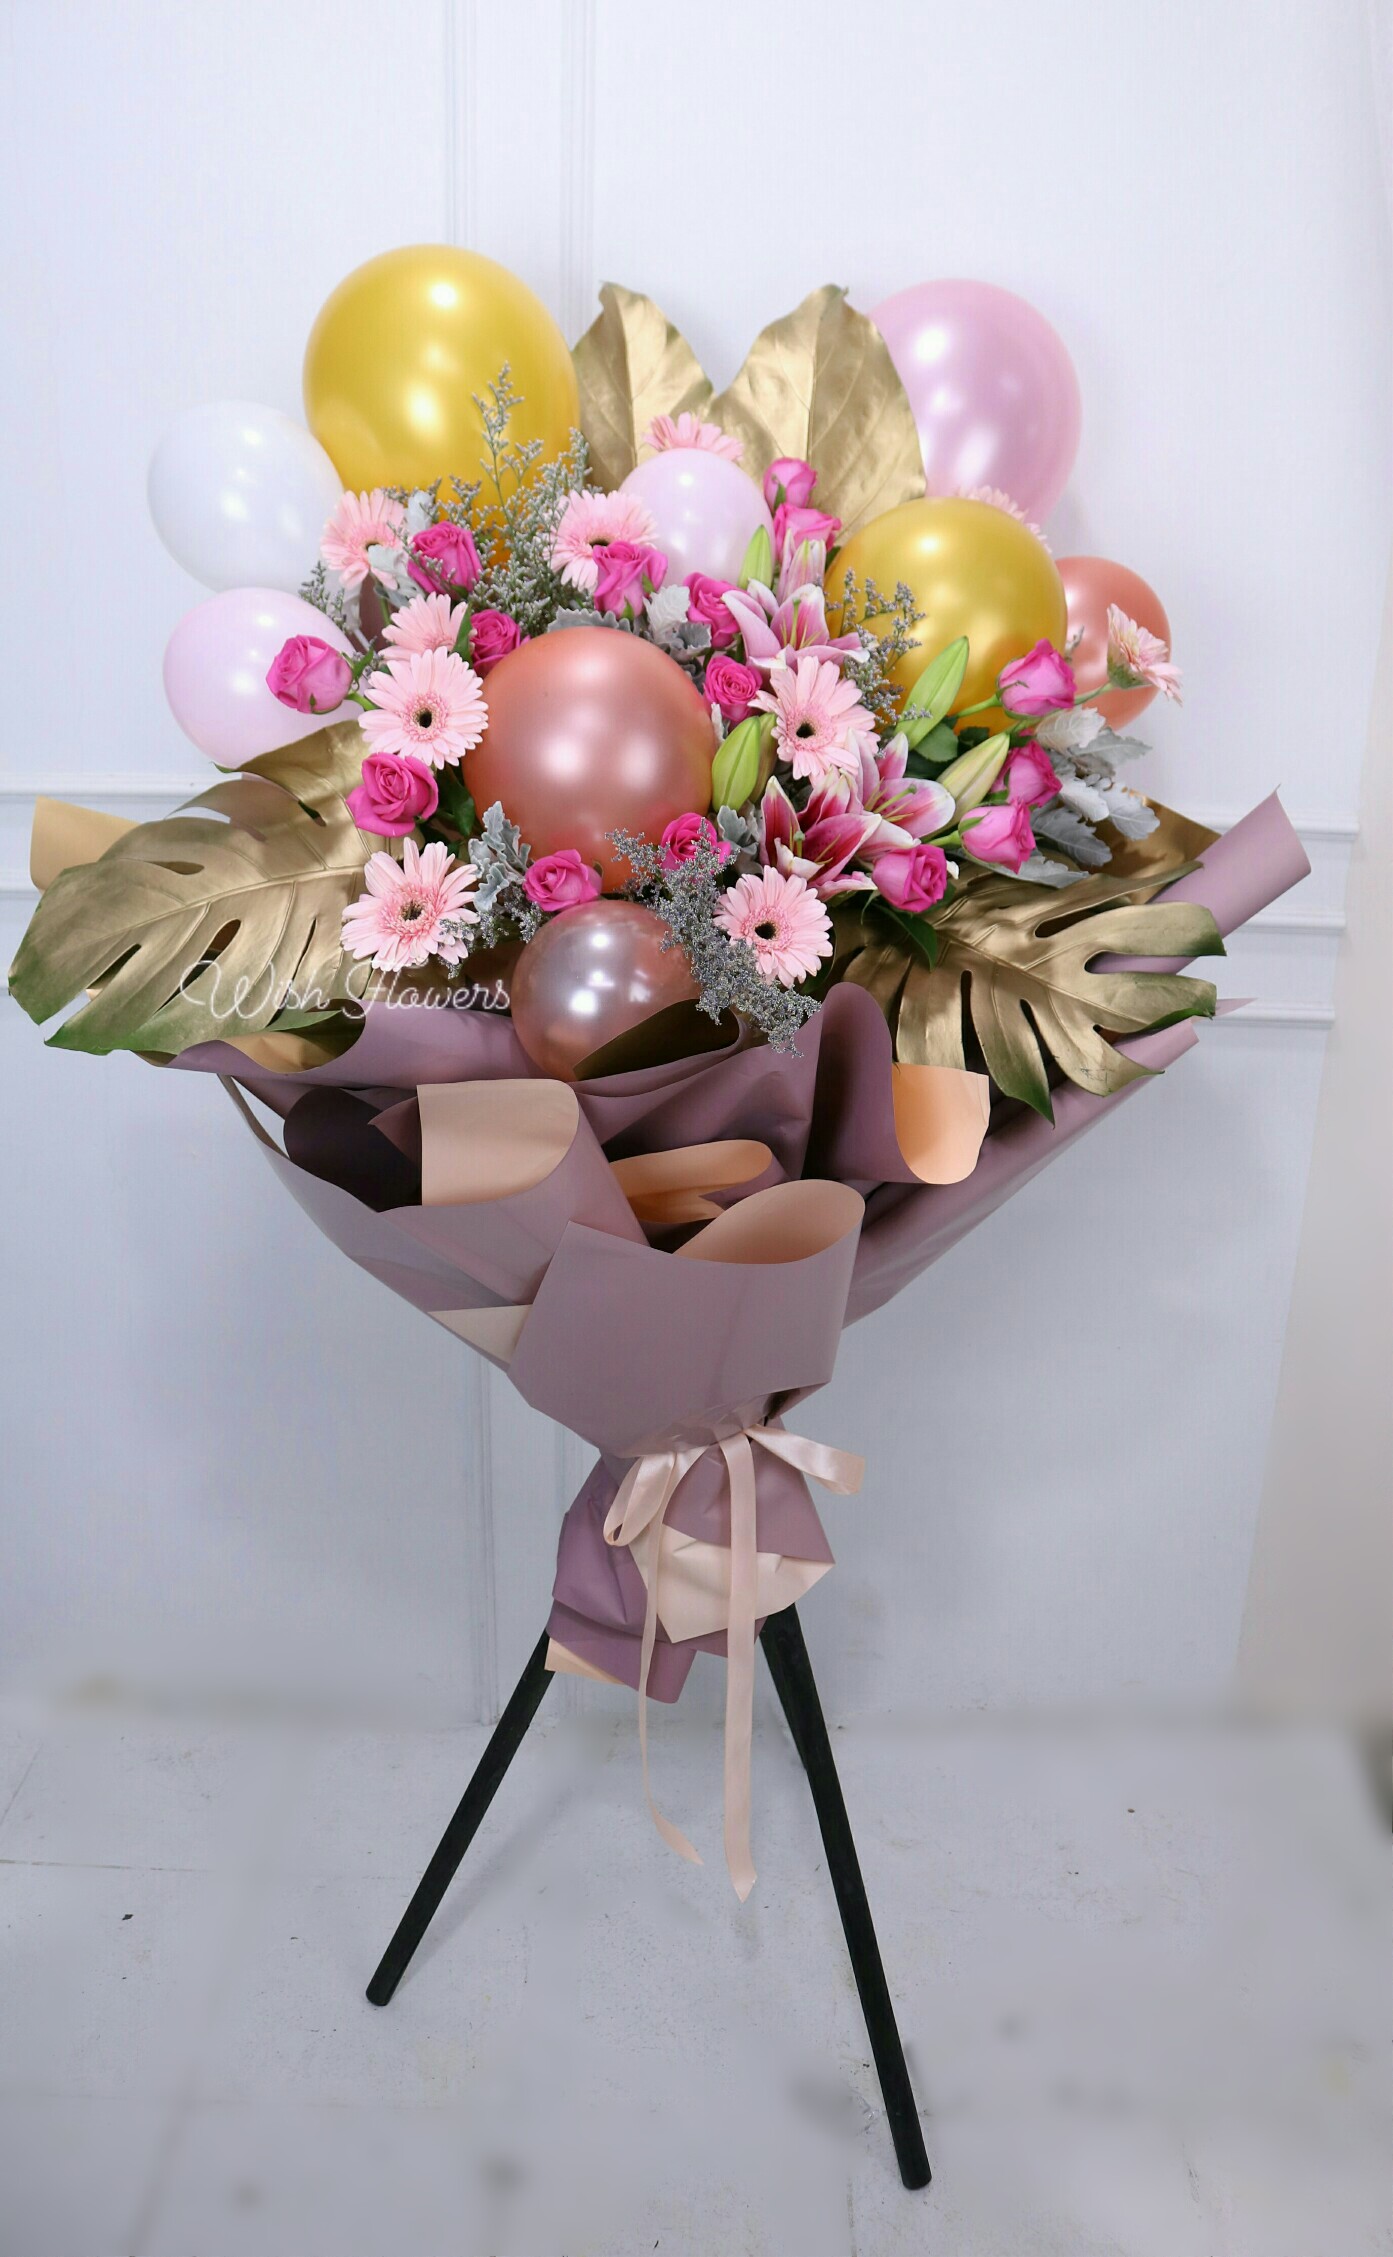 Balloon Flower Stand – 06 – Wish Flowers